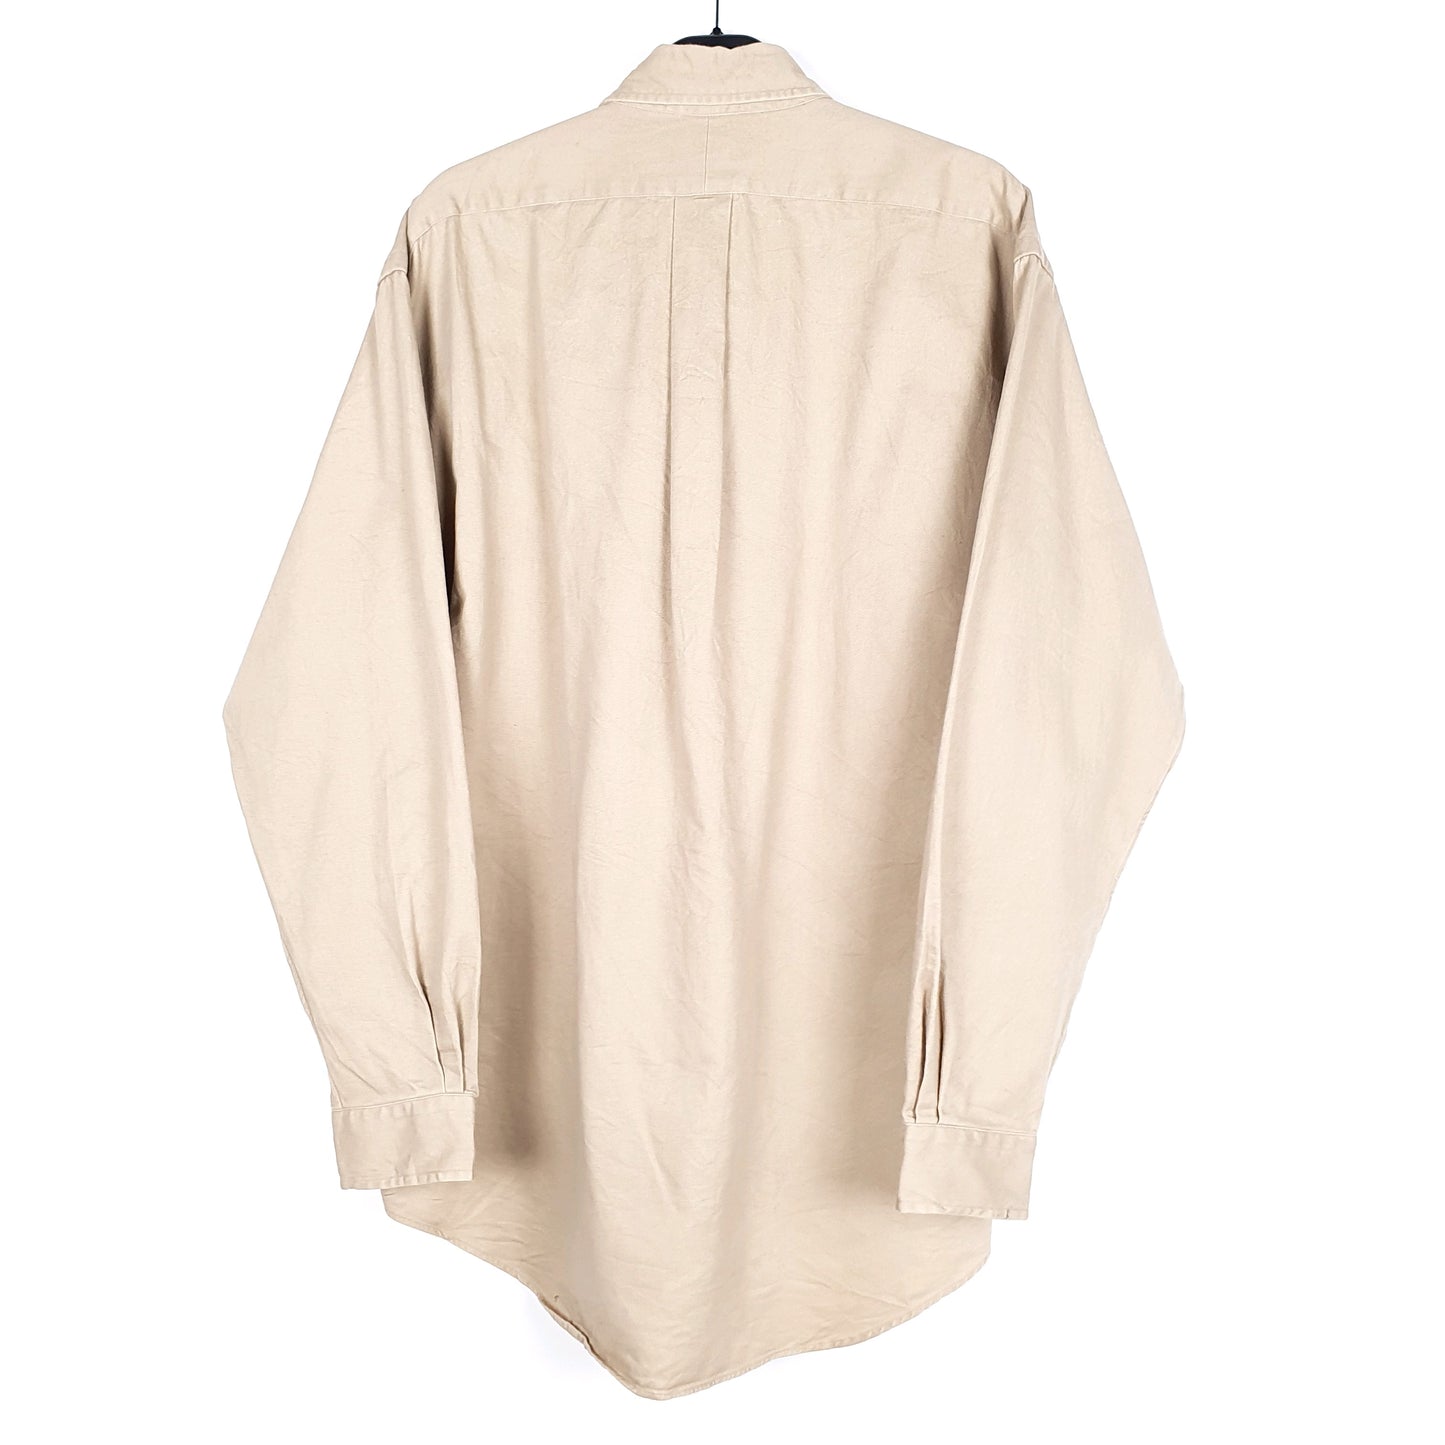 Polo Ralph Lauren Long Sleeve Blake Fit Shirt